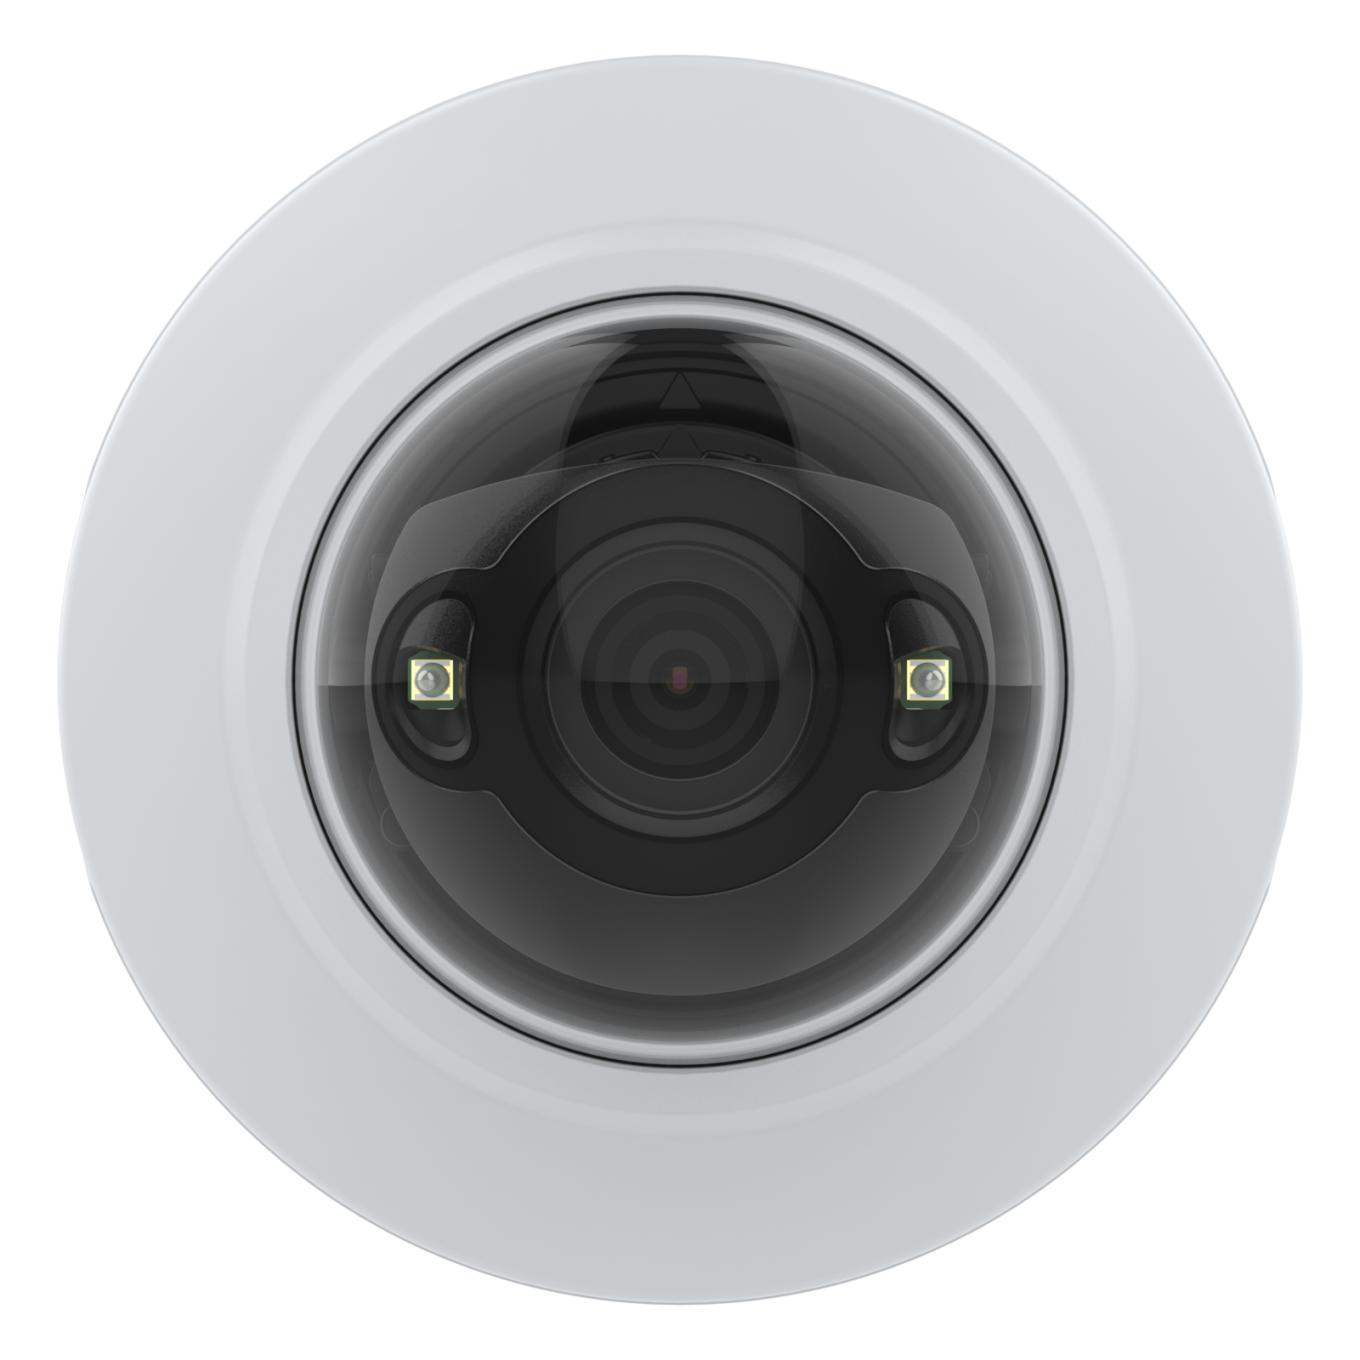 전면에서 본 AXIS M4215-LV Dome Camera, 흰색 프레임